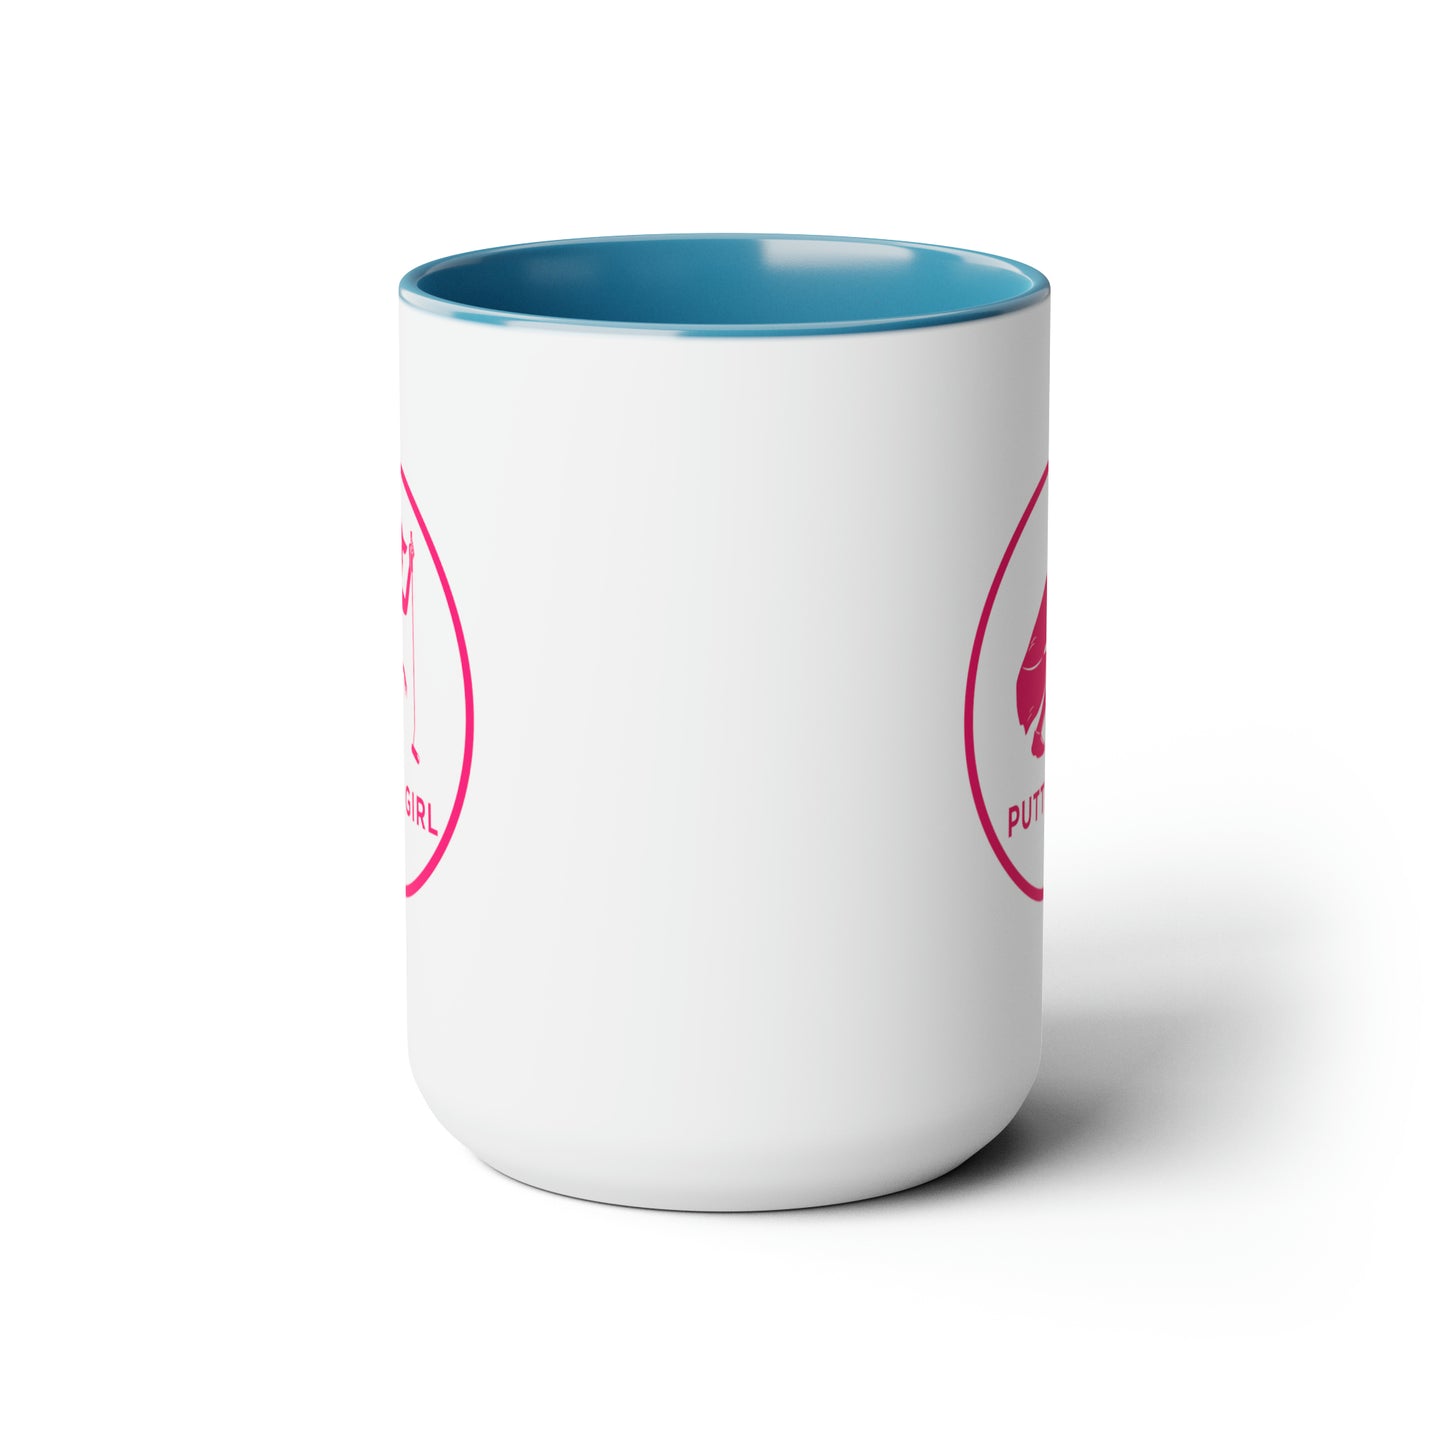 Putter Girl Two-Tone Coffee Mugs, 15oz